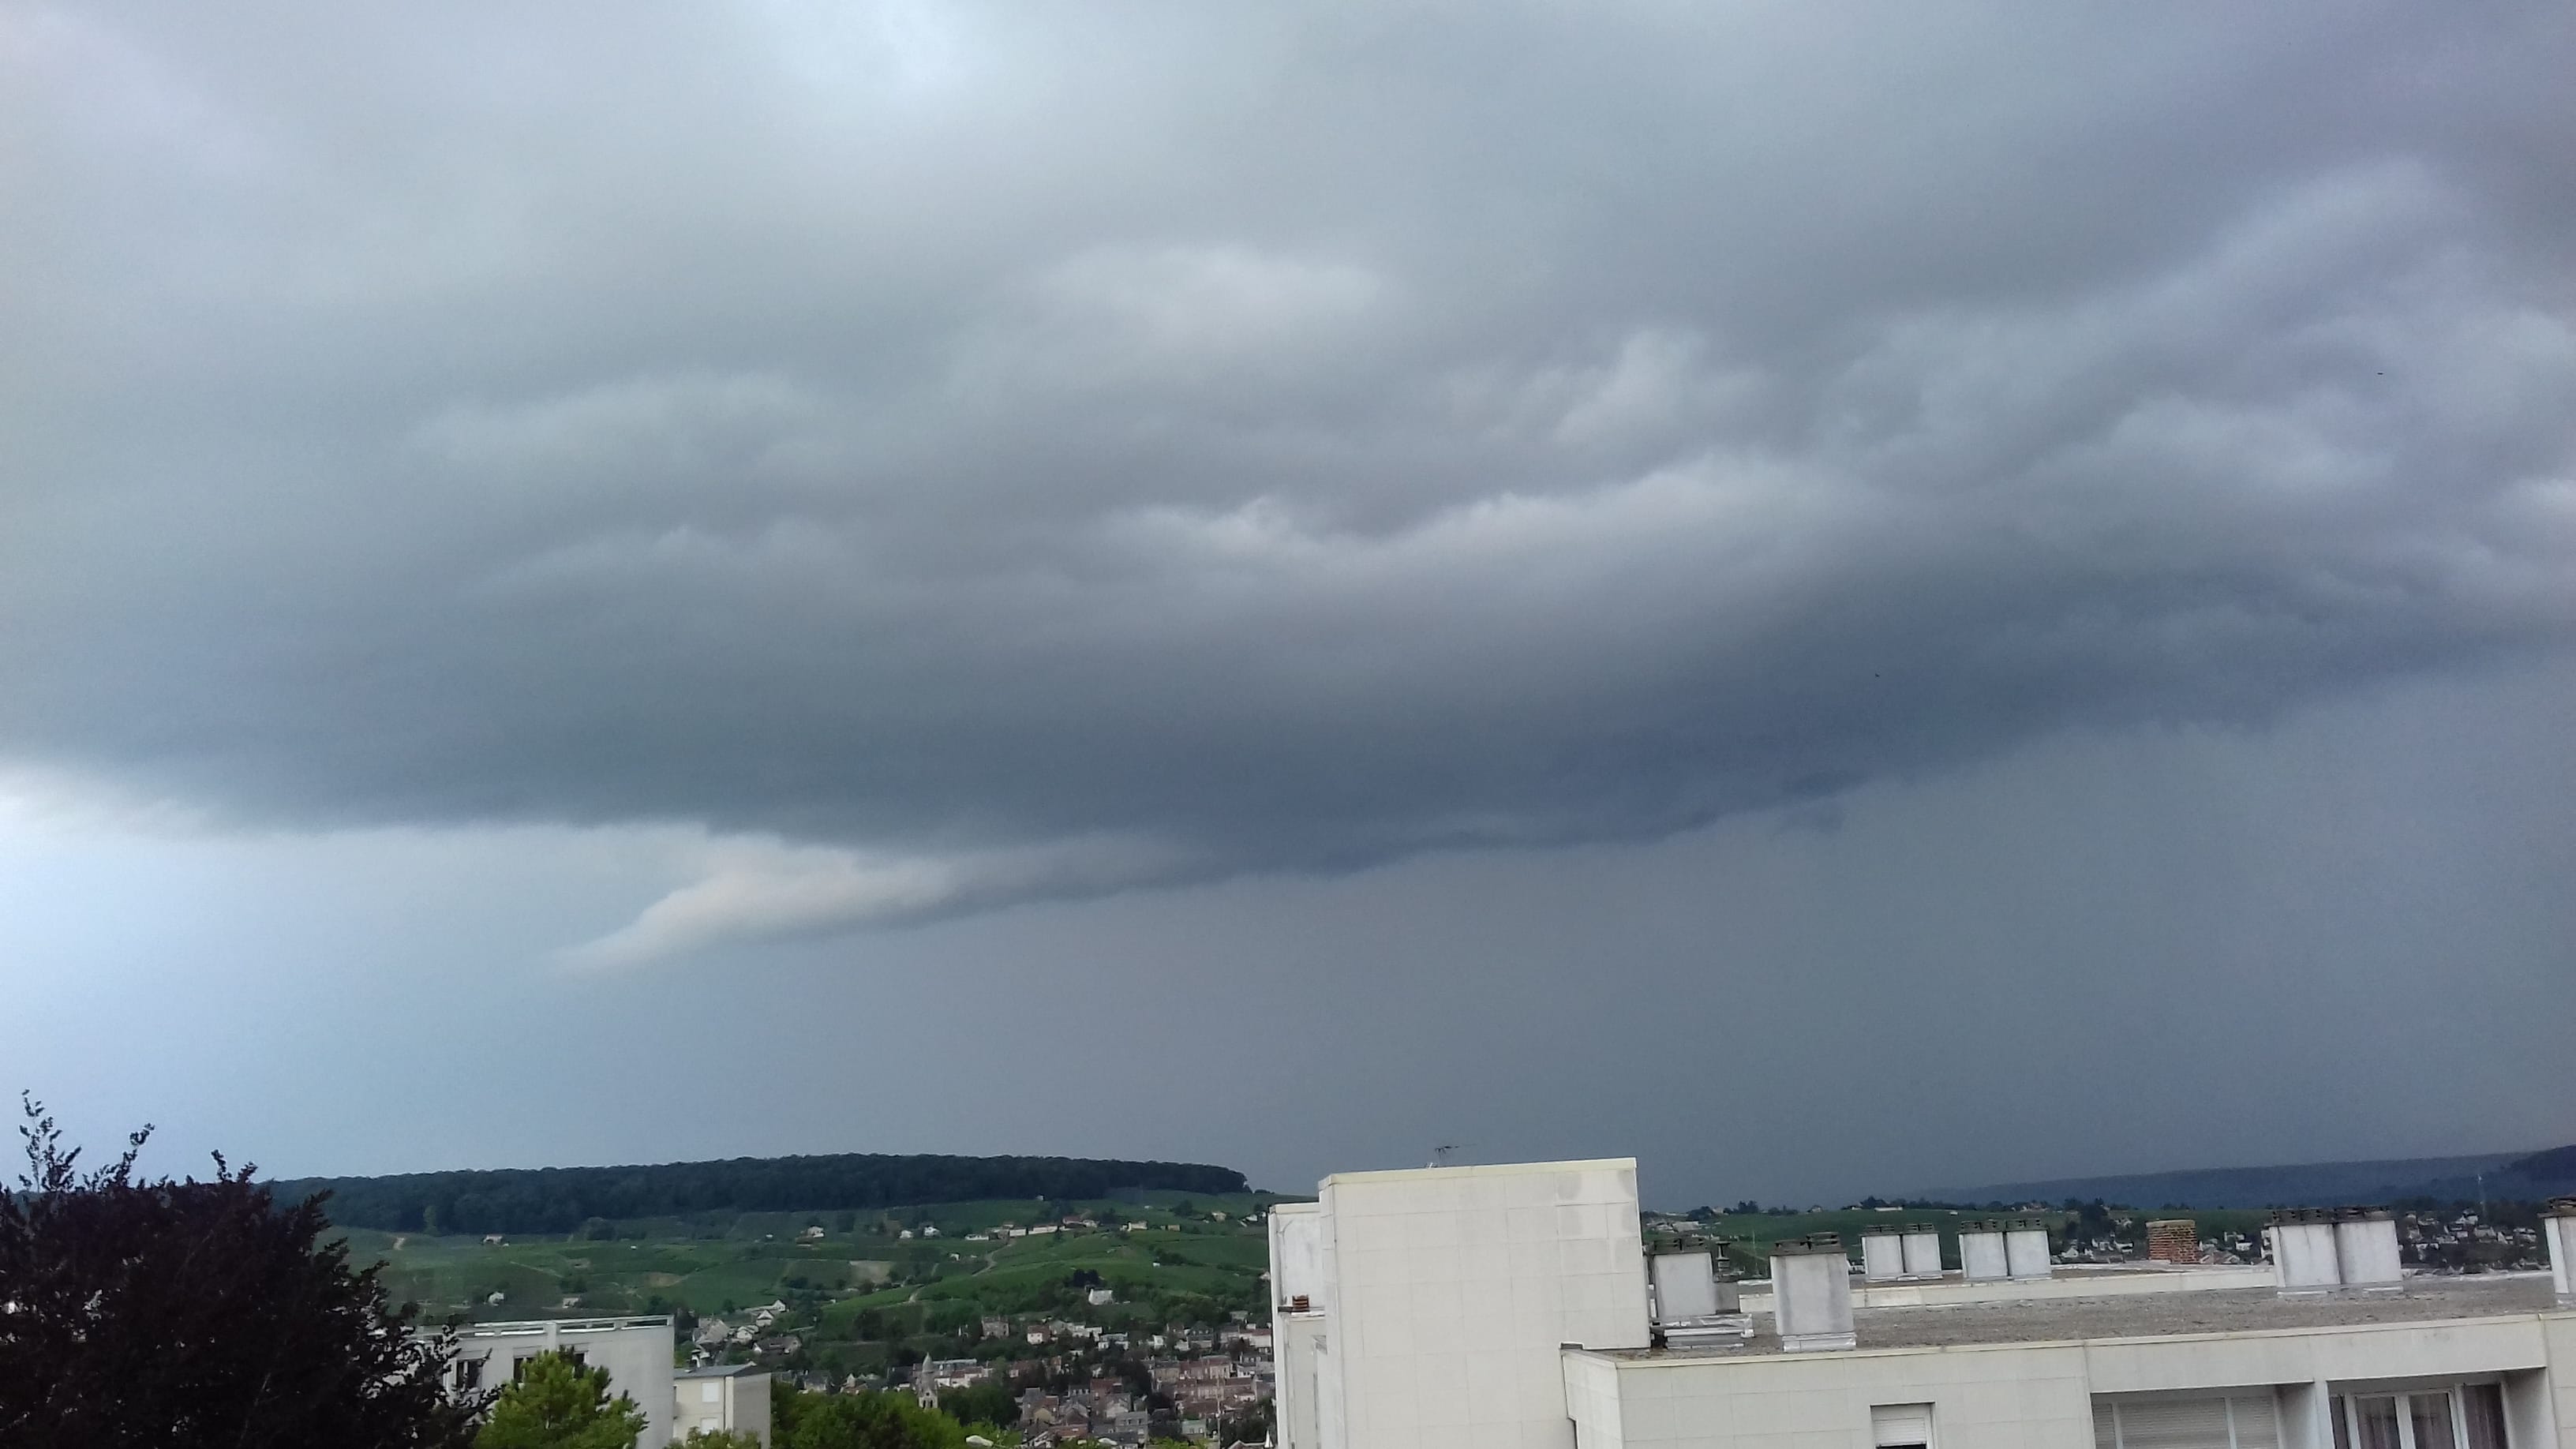 orages à epernay - 05/07/2018 00:00 - Elise Rachesboeuf